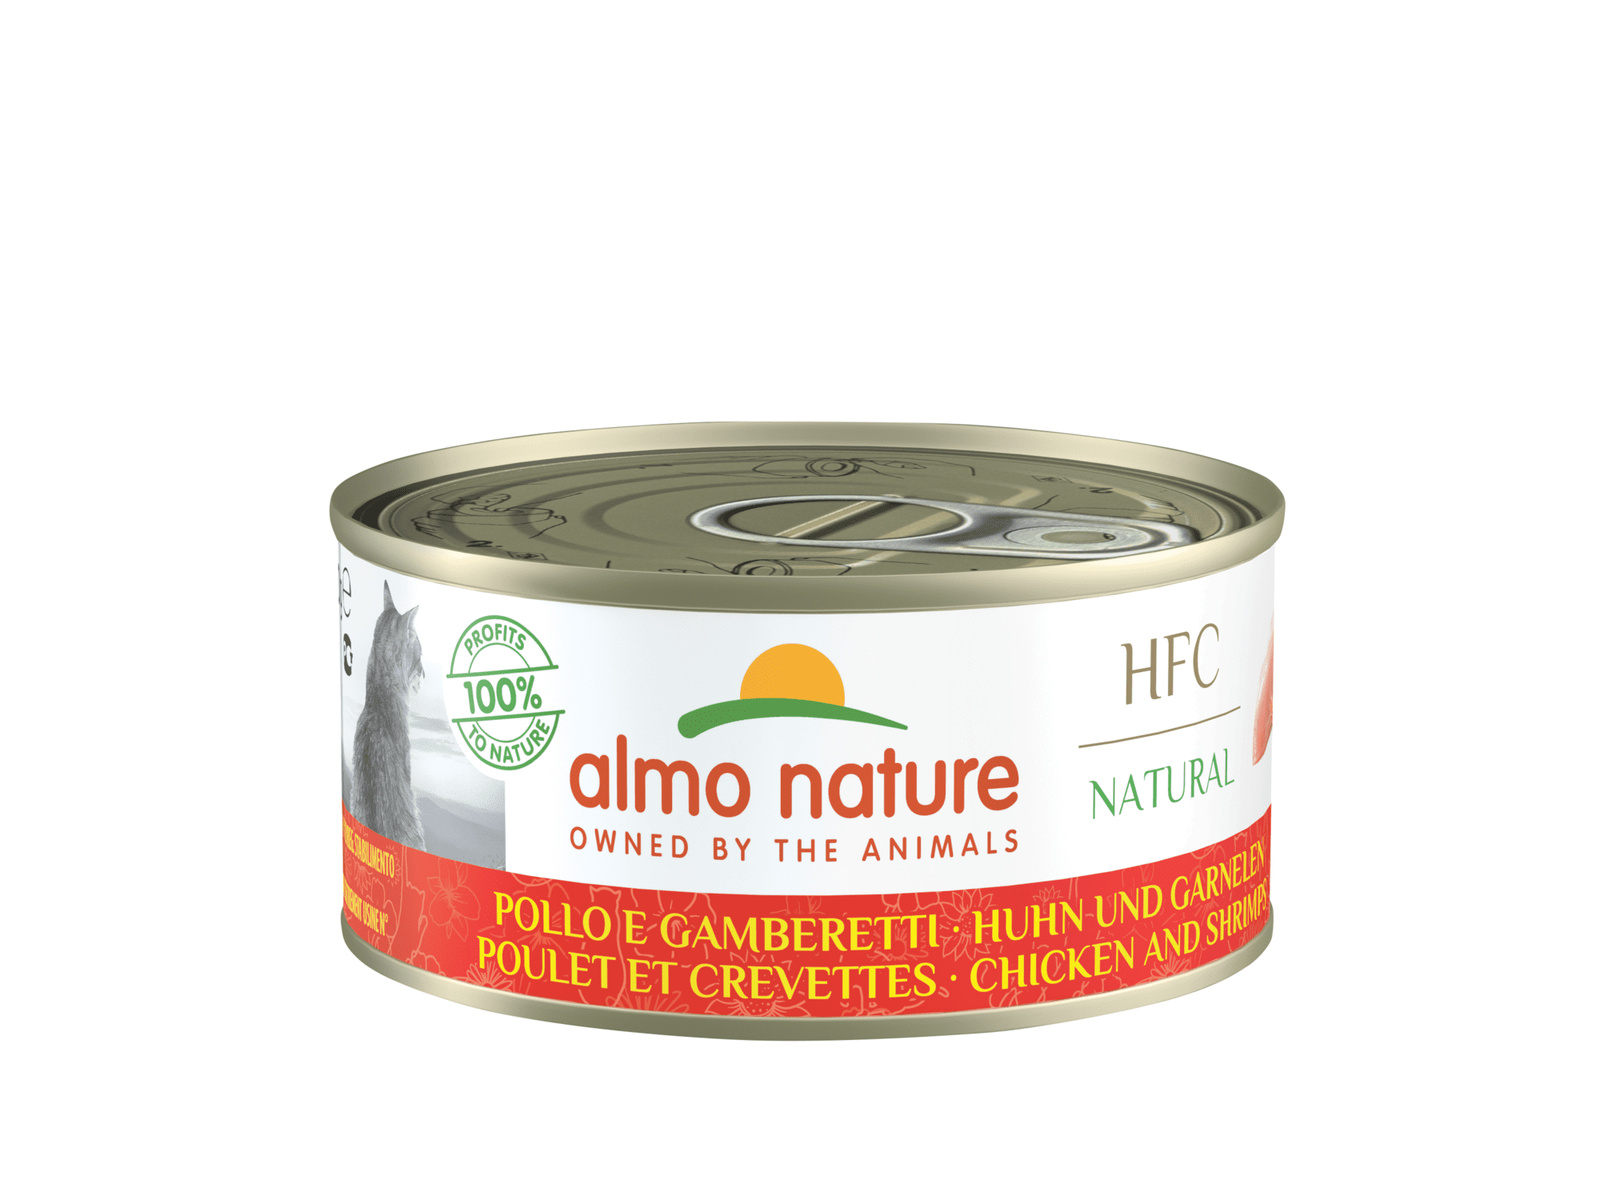 Almo Nature консервы для кошек, с курицей и креветками, 55% мяса (24 шт. по 150 г)